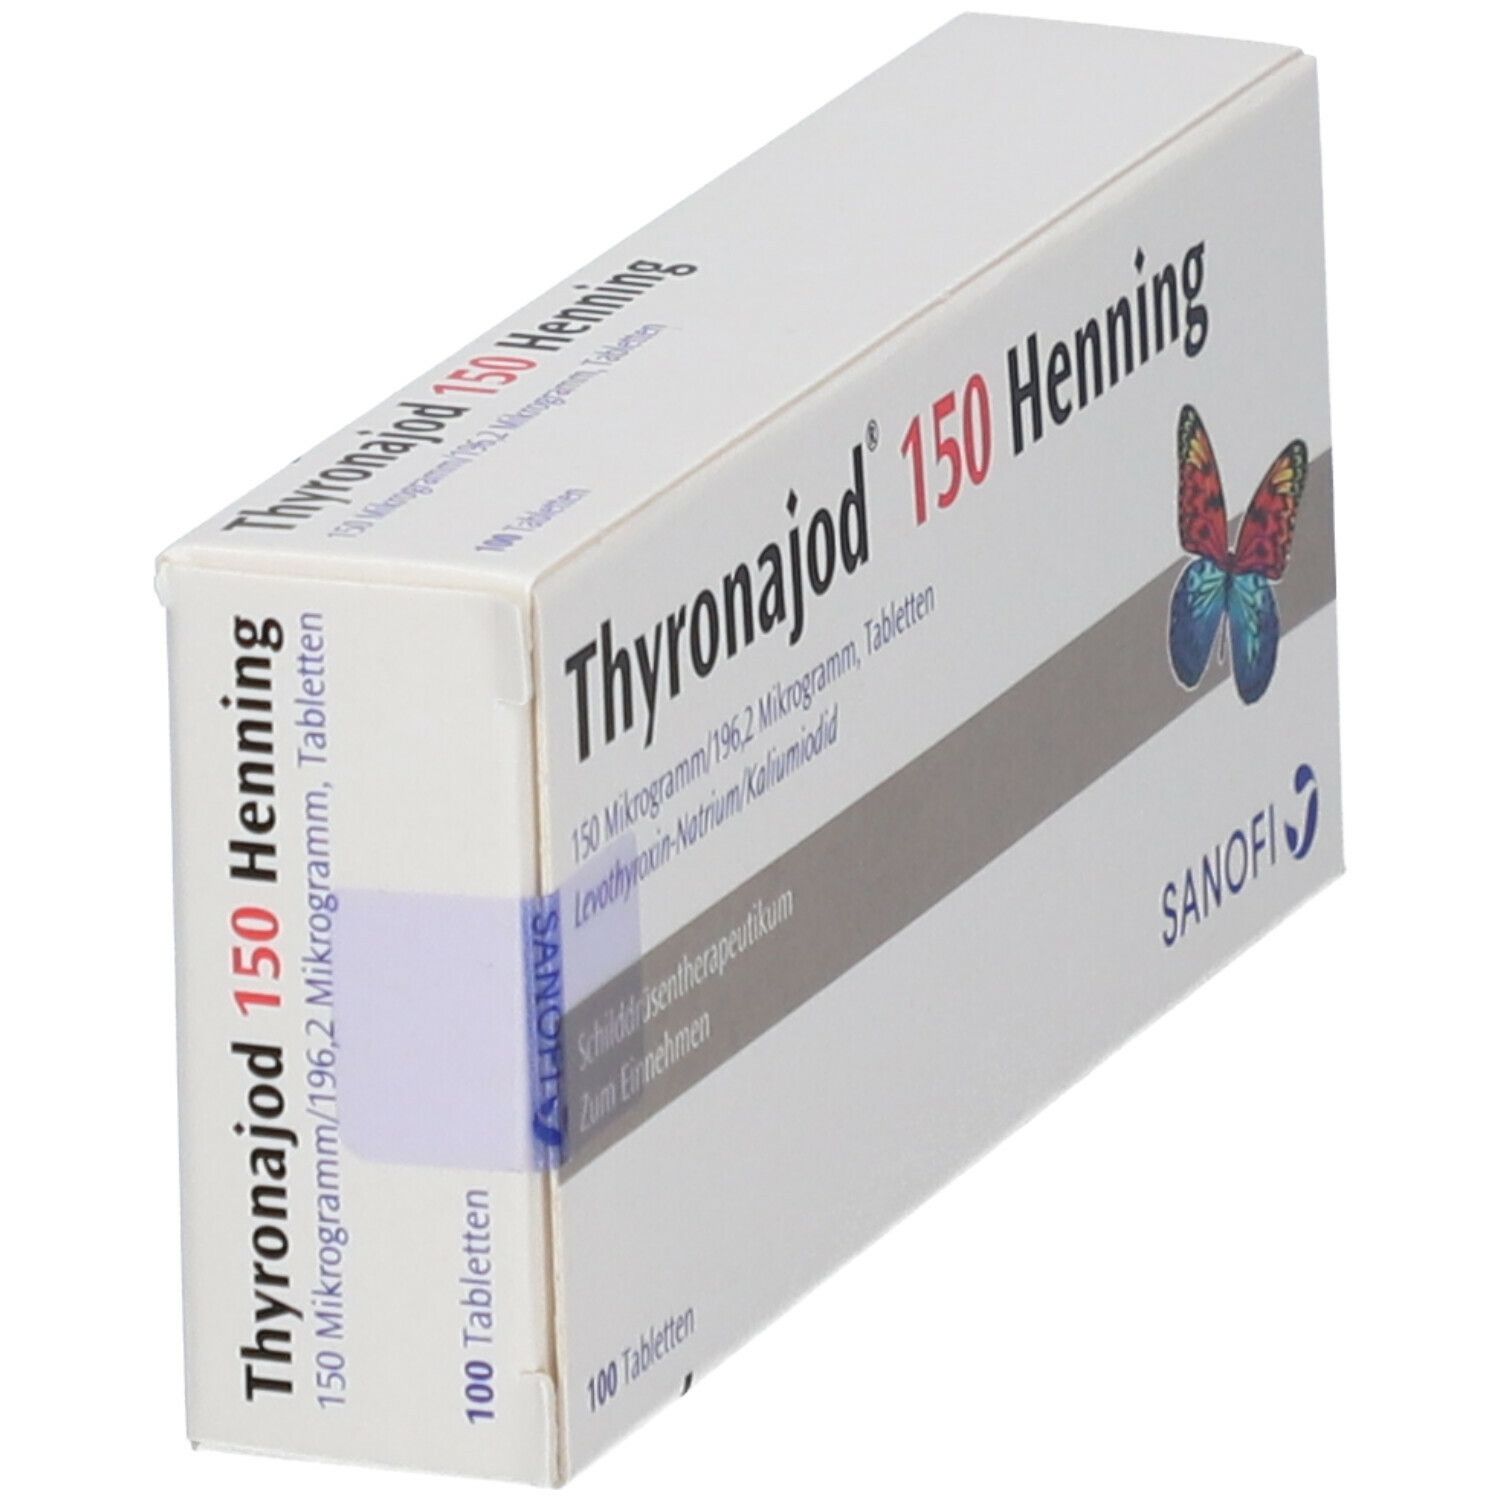 Thyronajod® 150 Henning